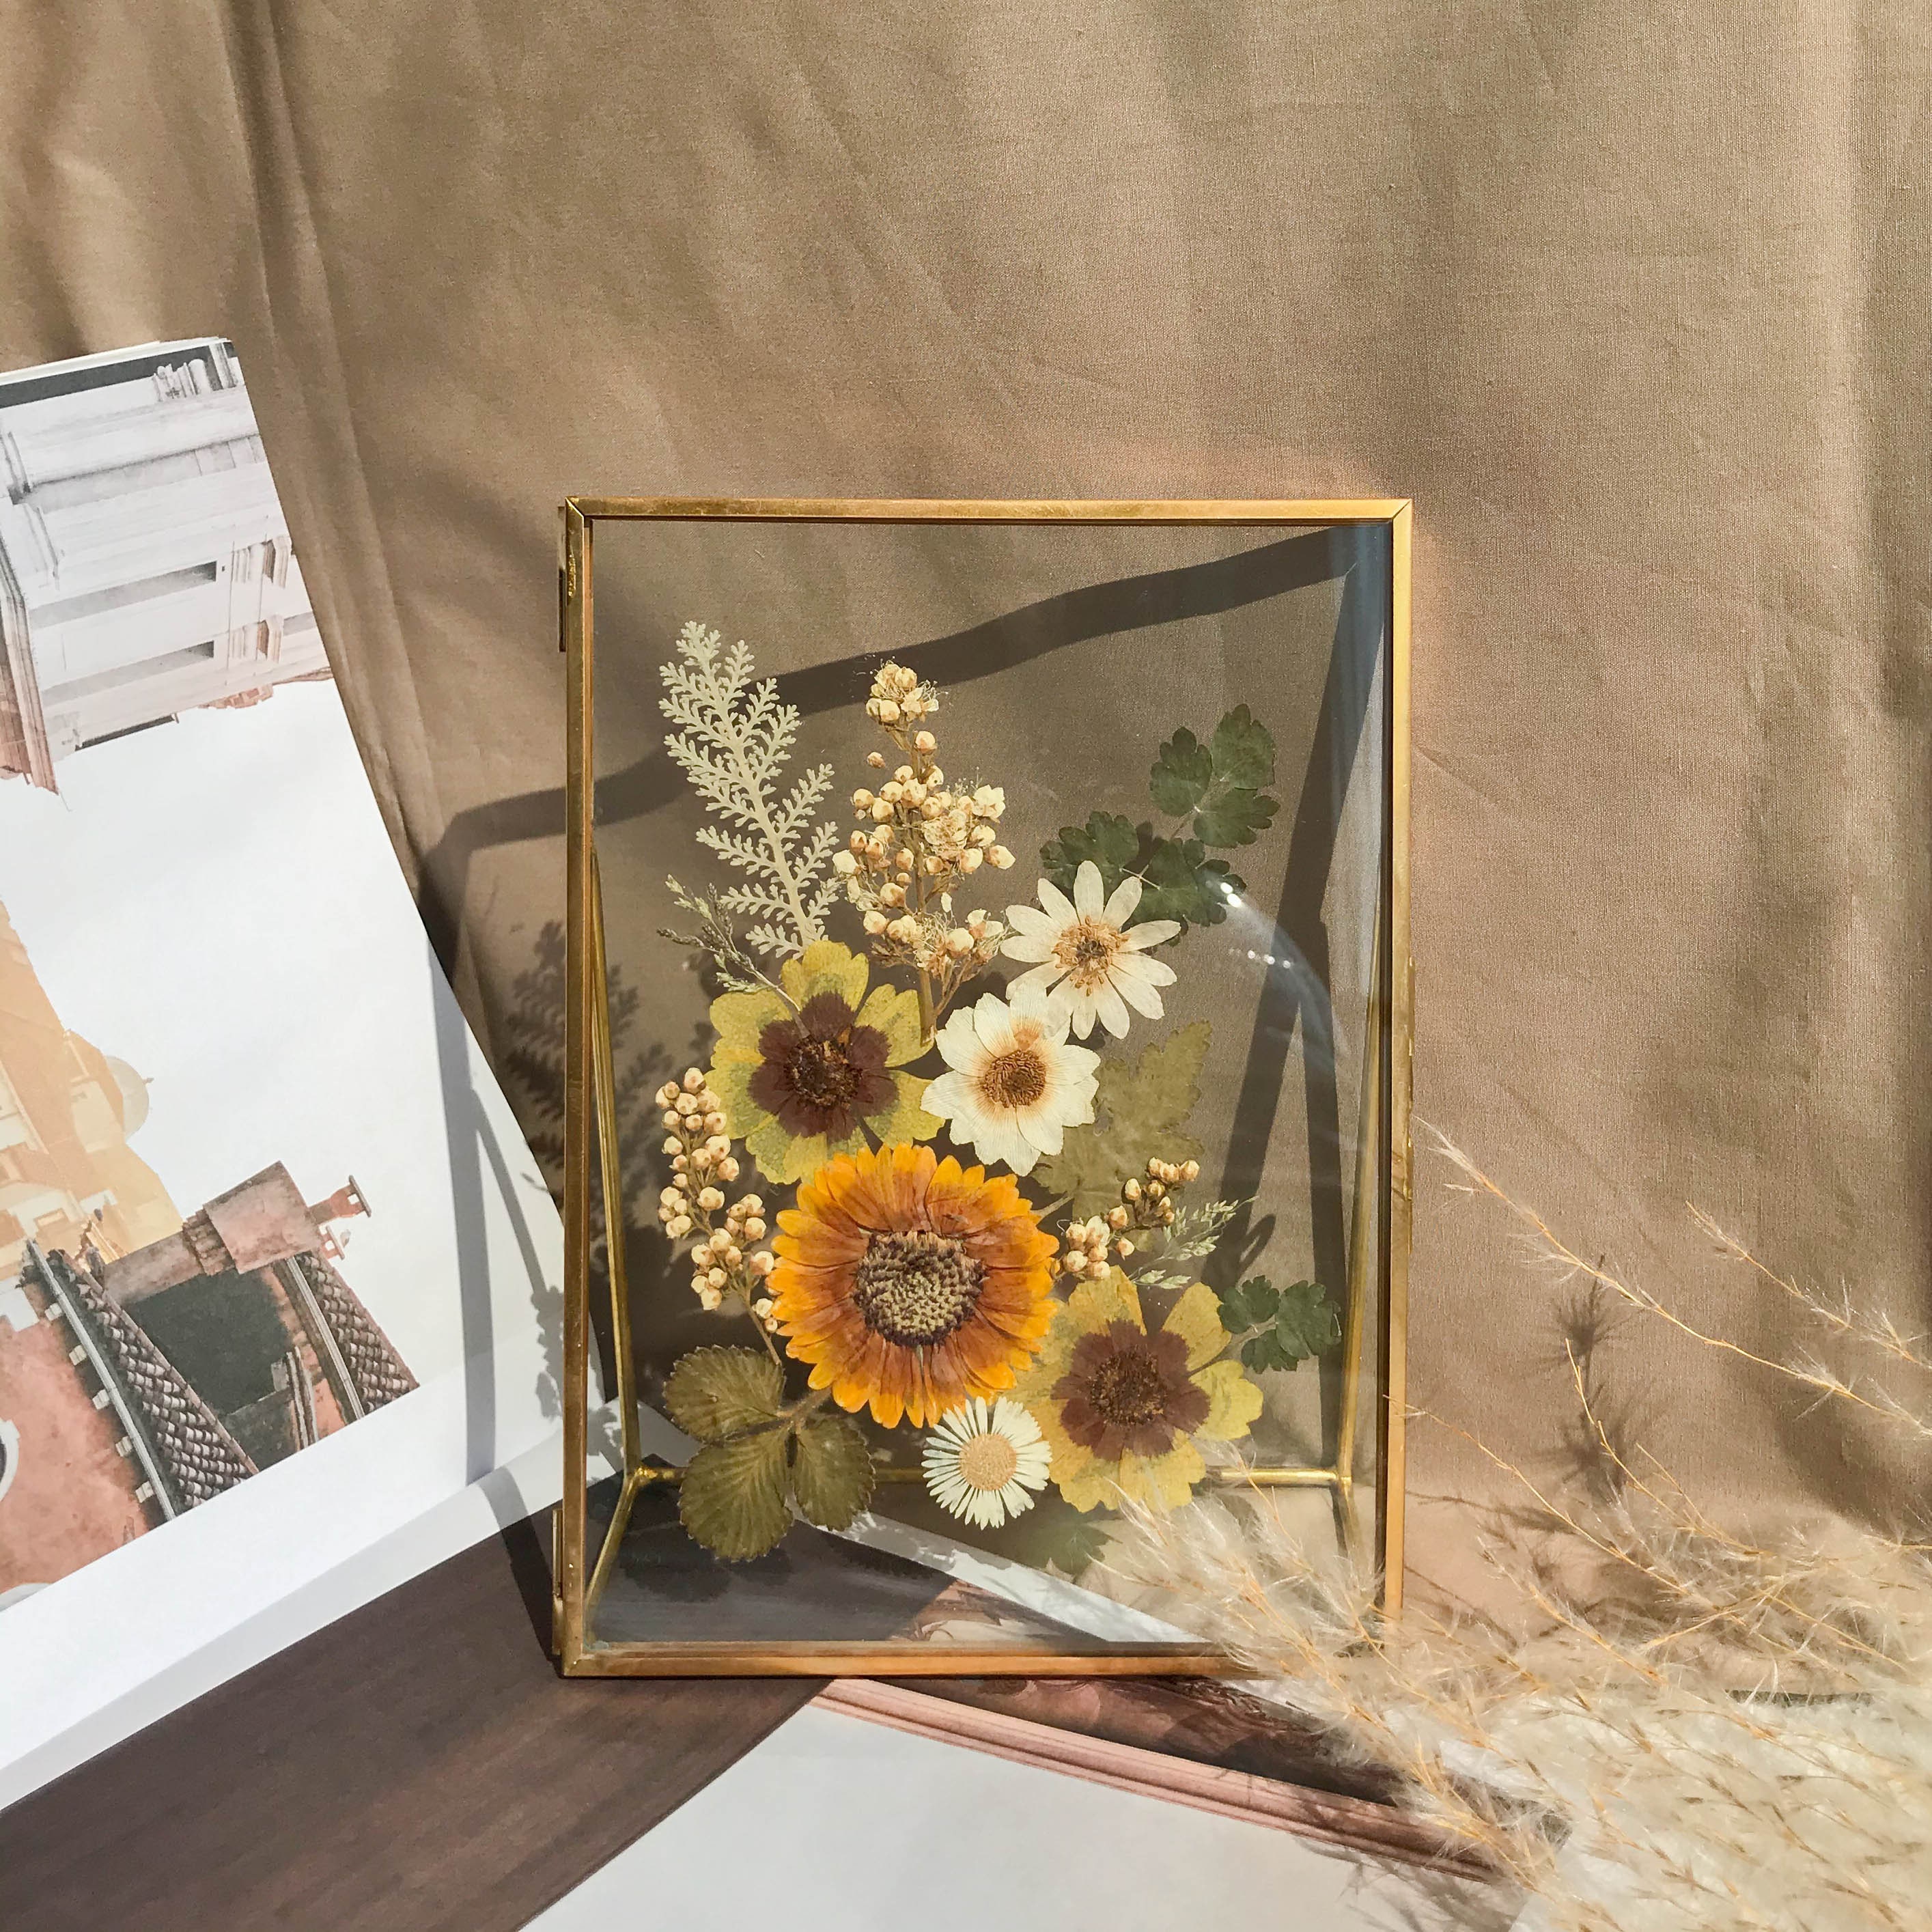 Heart Hands Pressed Flower Frame Home Decor Birthday Gift Ideas Room Art  Garden 